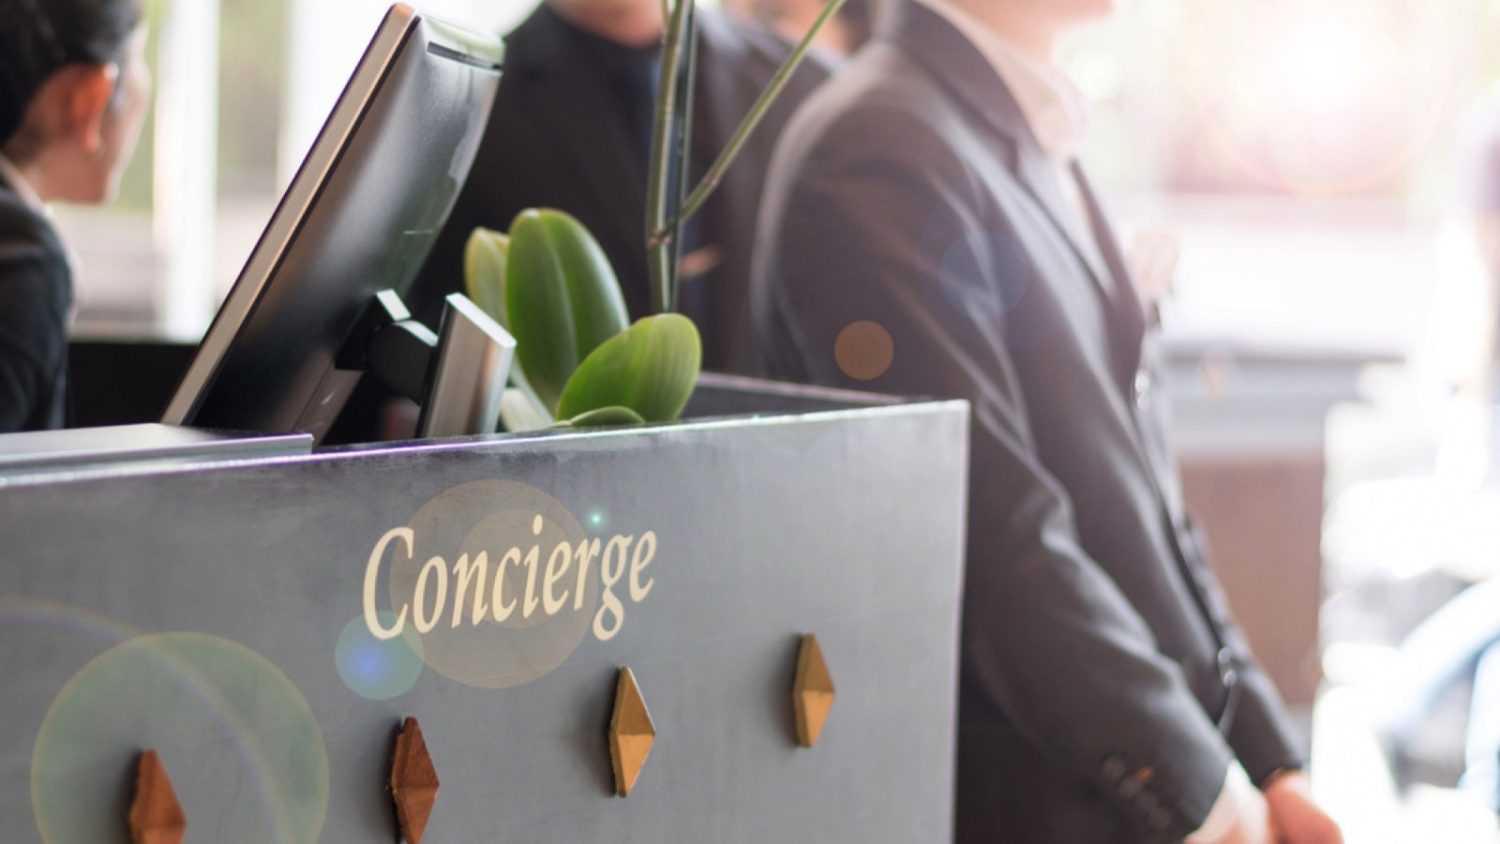 Concierge Services